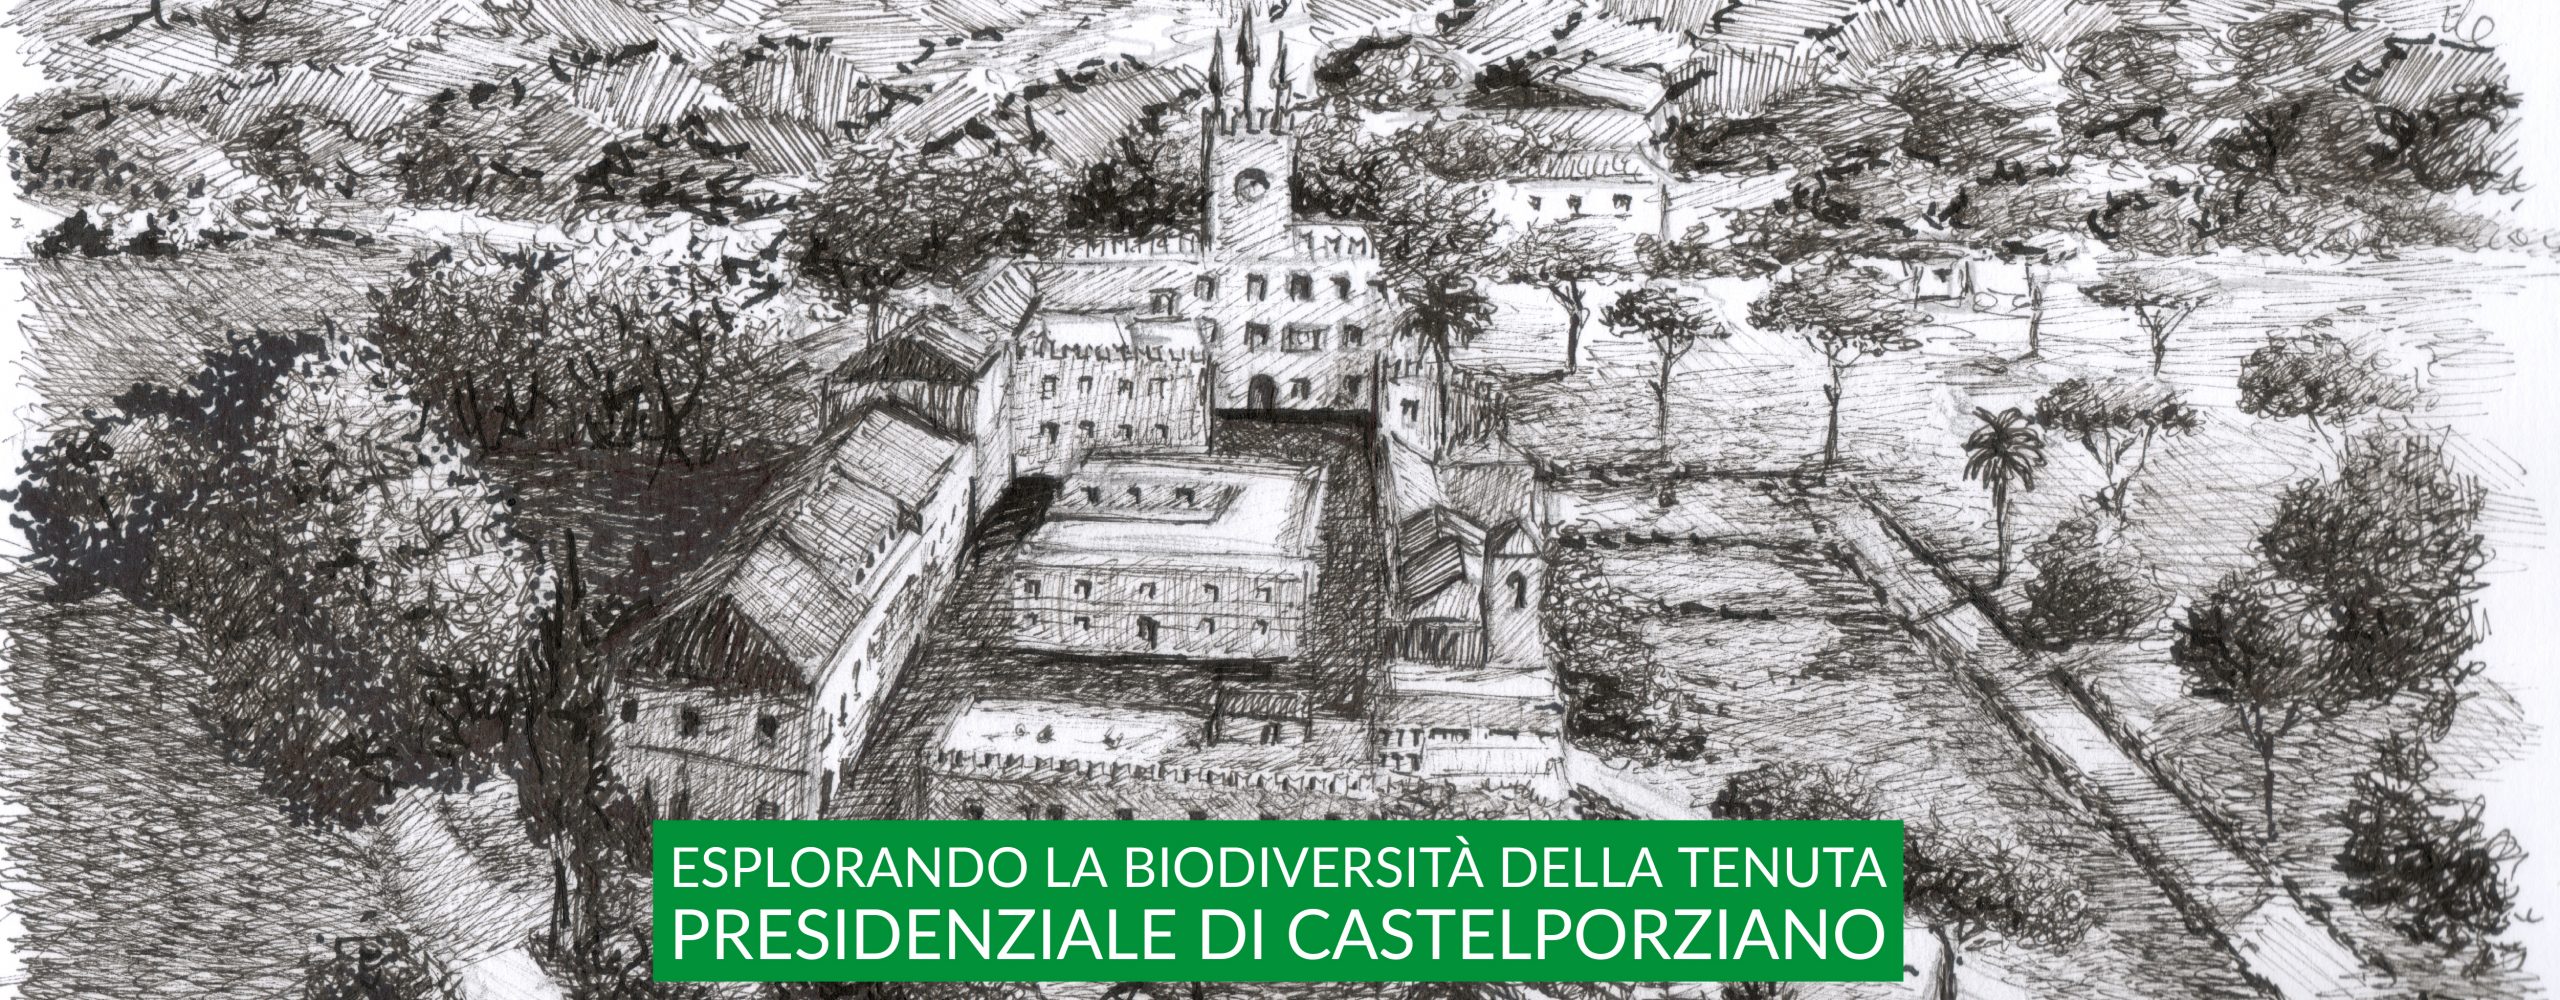 Esplorando la biodiversità di Castelporziano